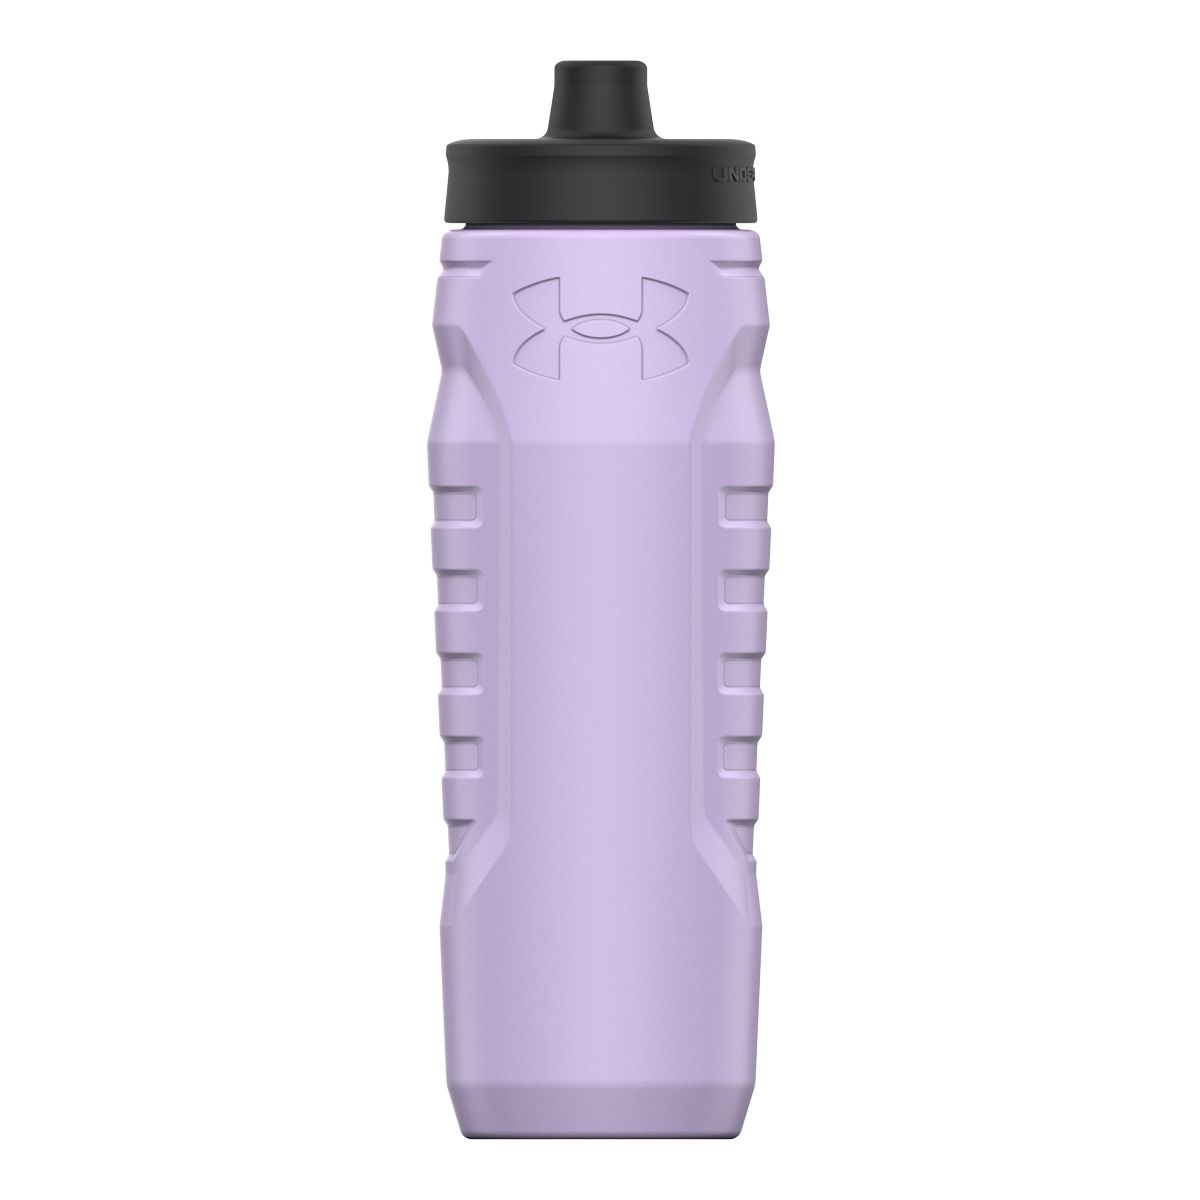 Sport Chek 28 oz Pro Style Water Bottle